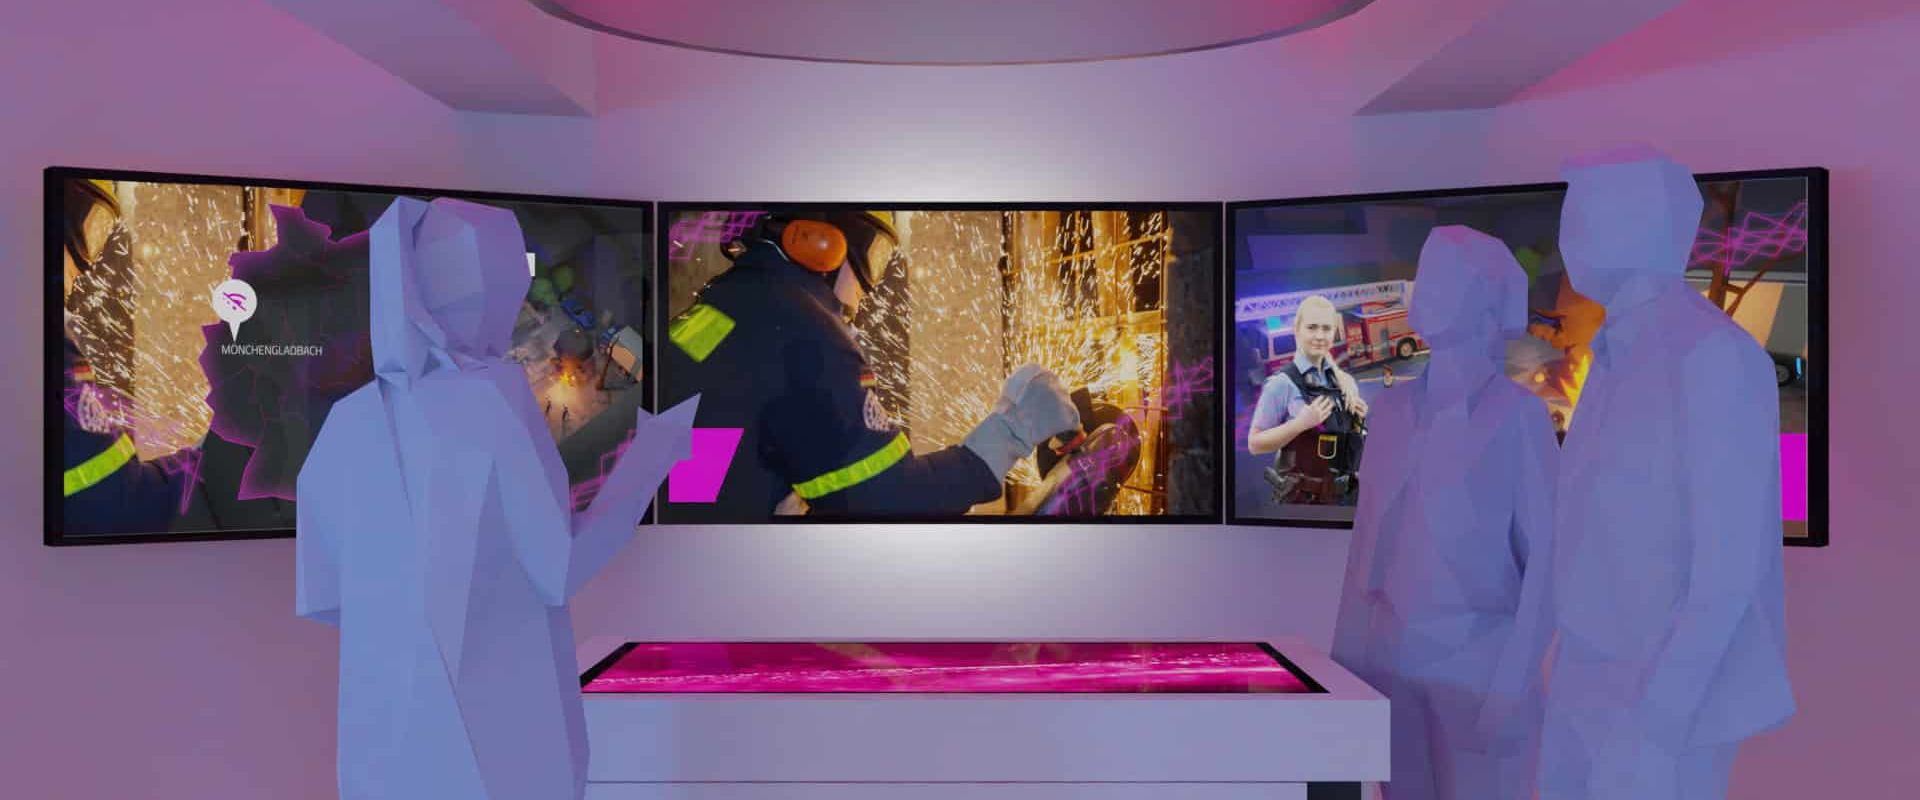 Erlebnis Showroom der Telekom in Berlin mit Multitouch Tisch und Screen-Wall